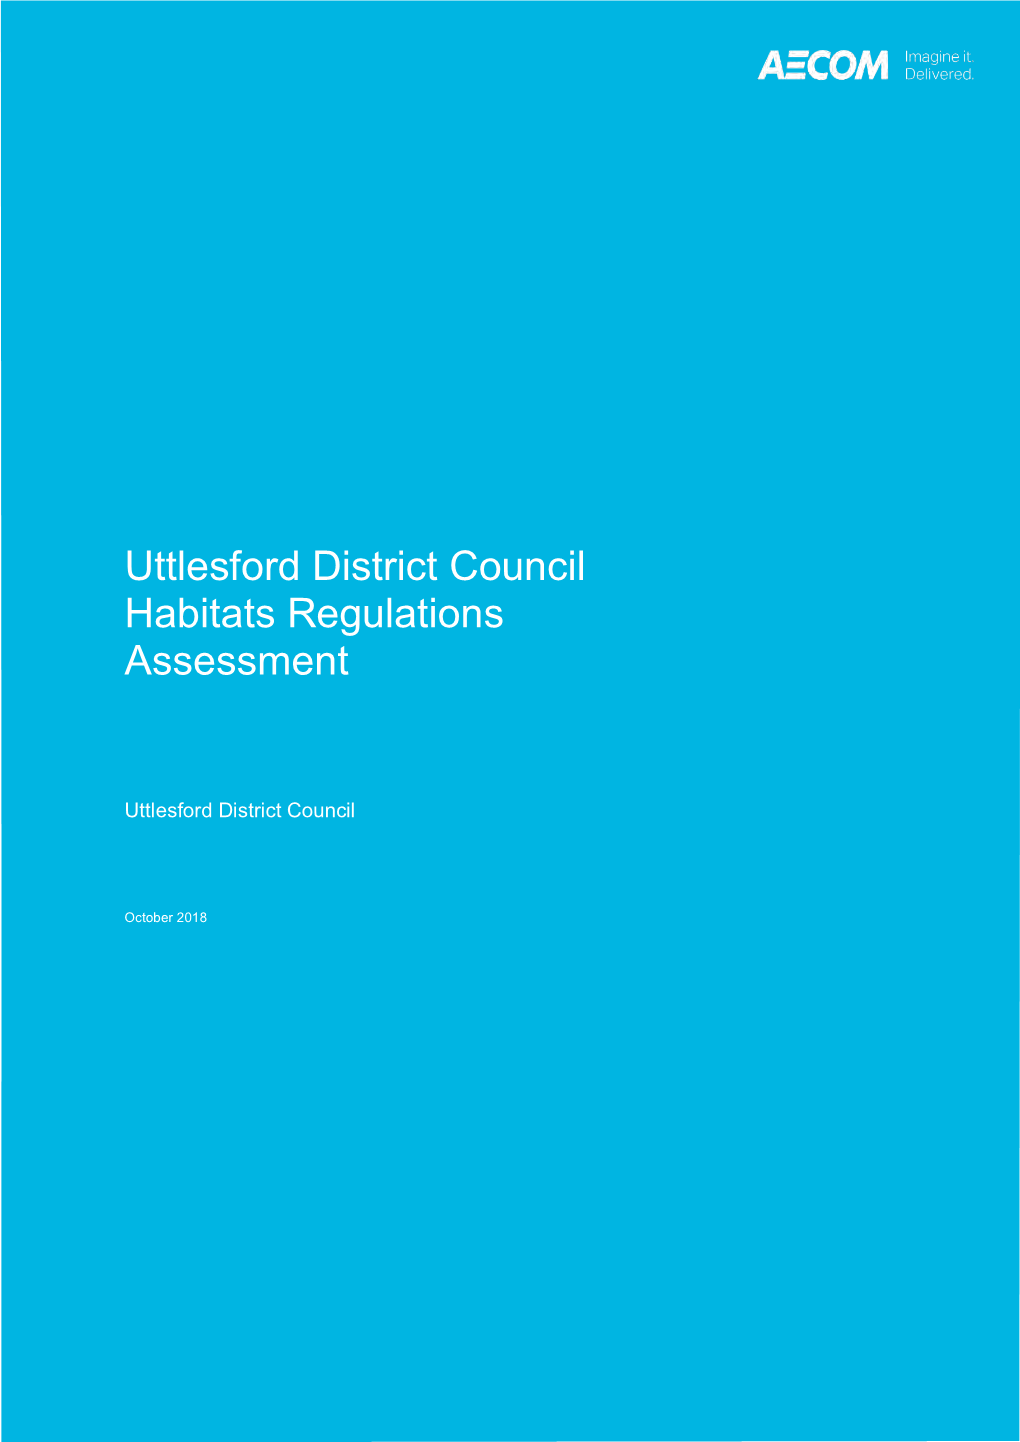 Uttlesford District Council Habitats Regulations Assessment